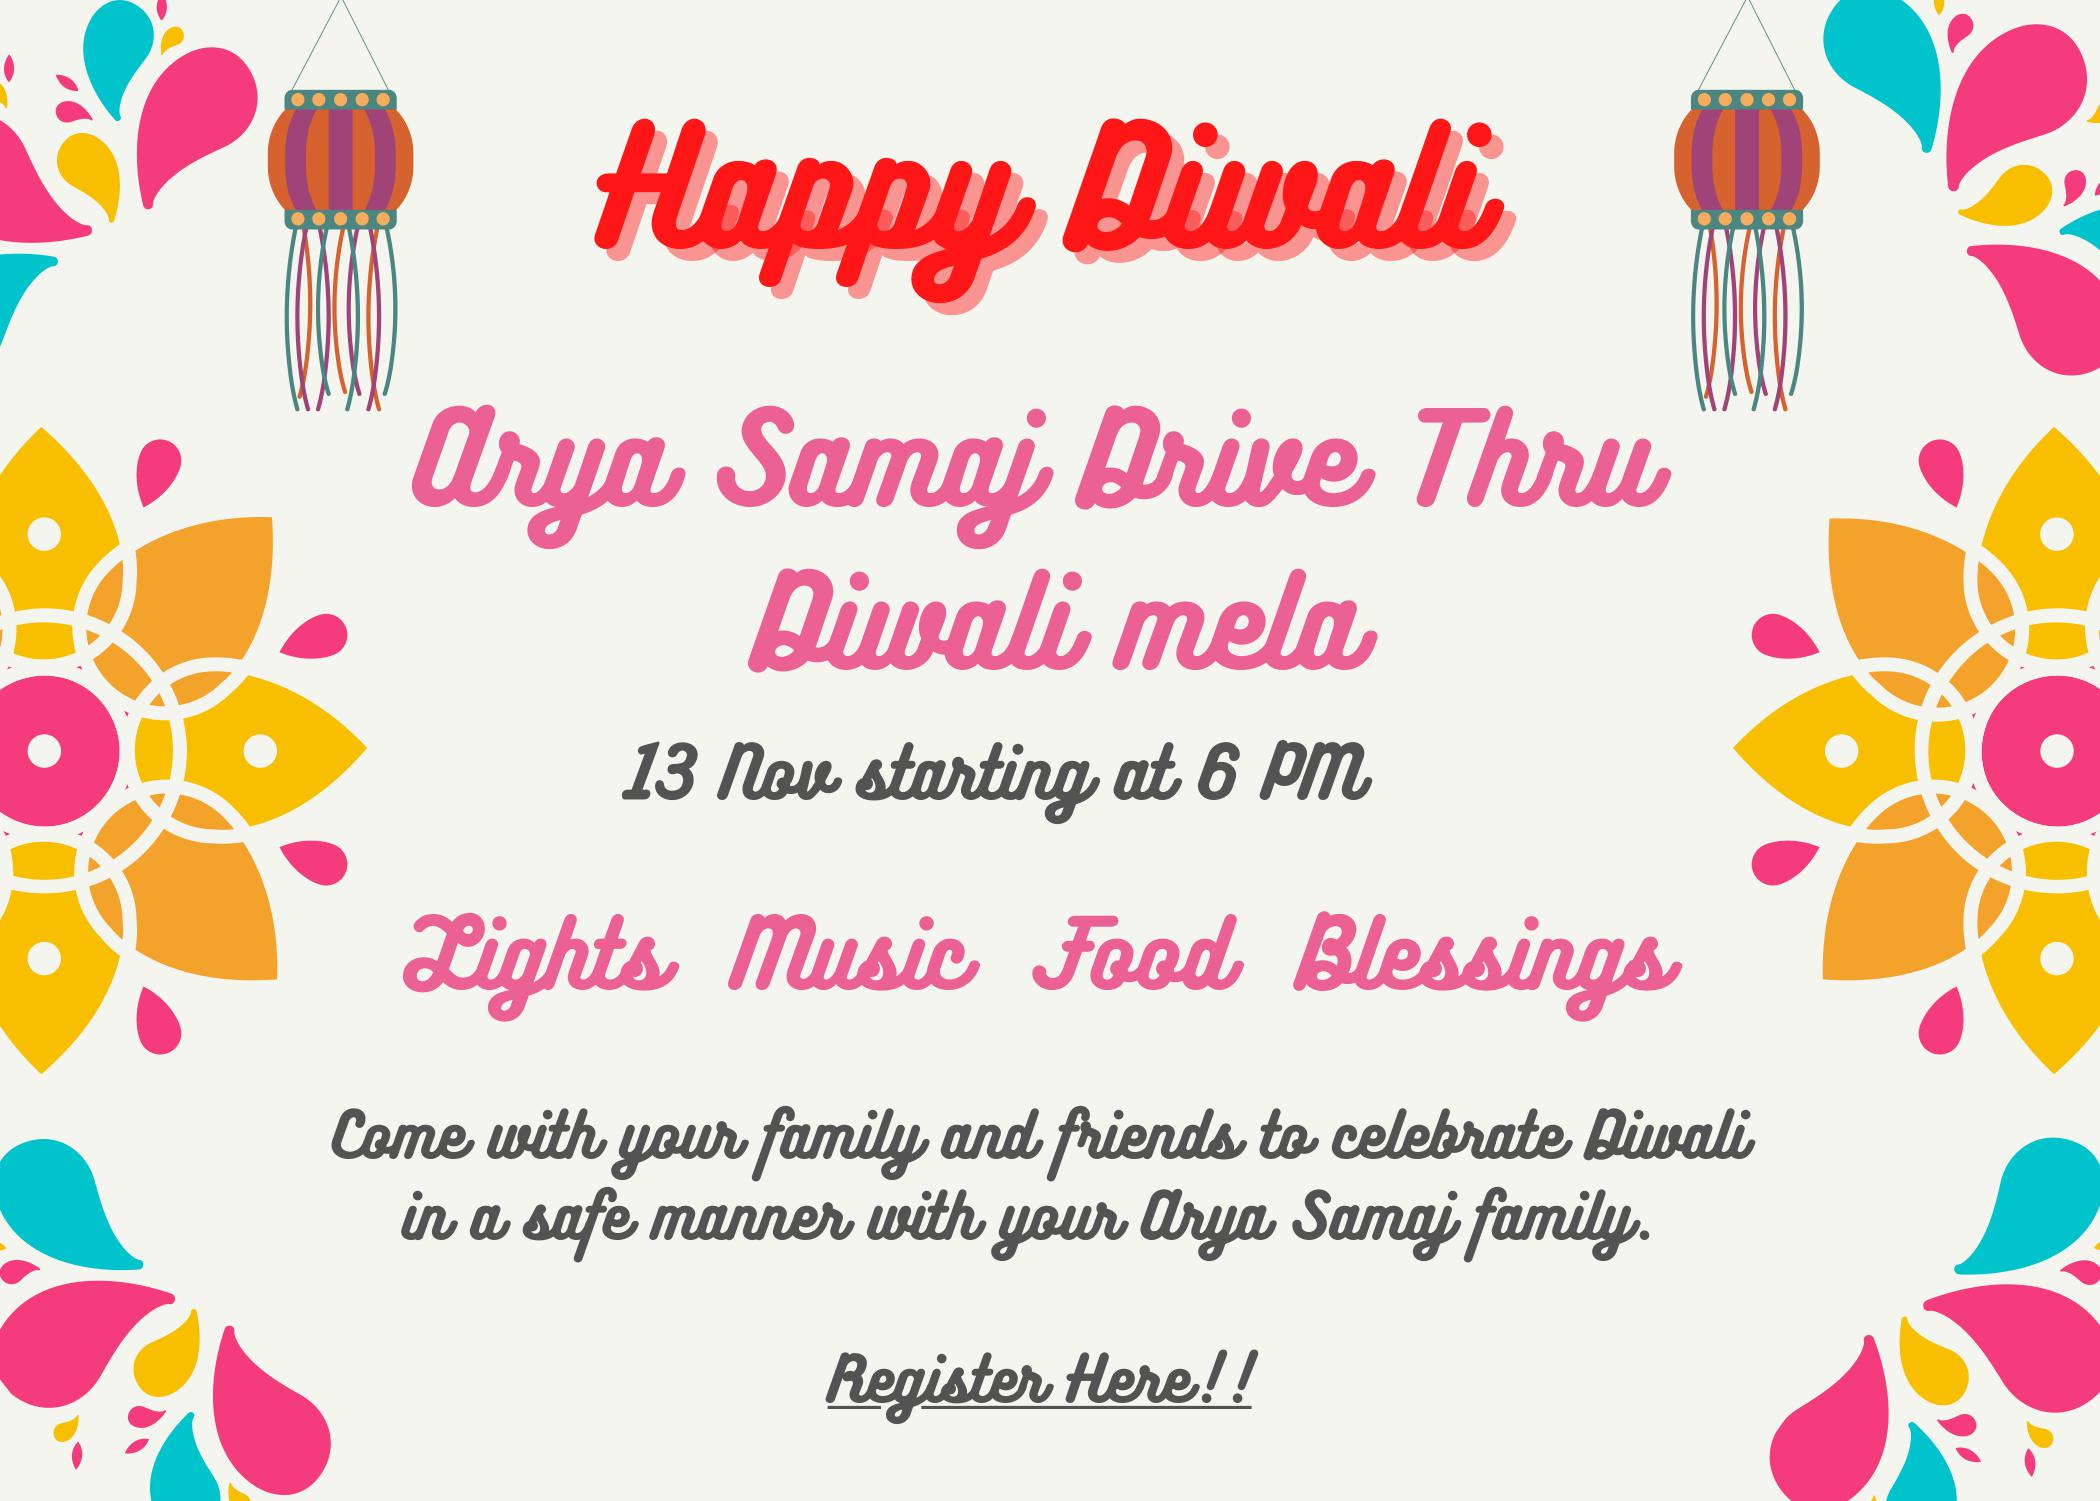 Arya Samaj Drive Thru Diwali